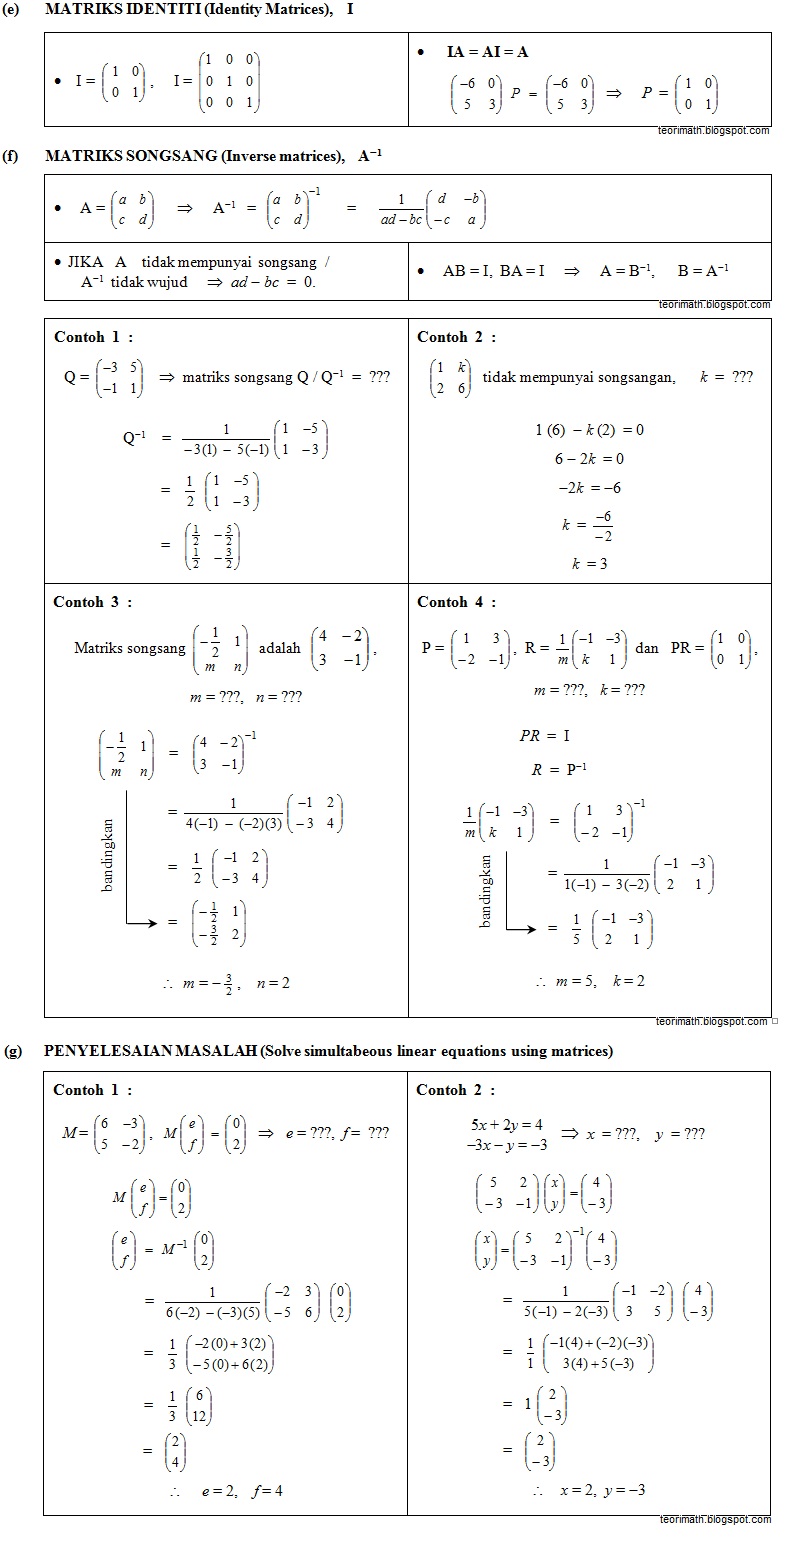 (26) Matriks (Matrices)  ! Chegu Zam